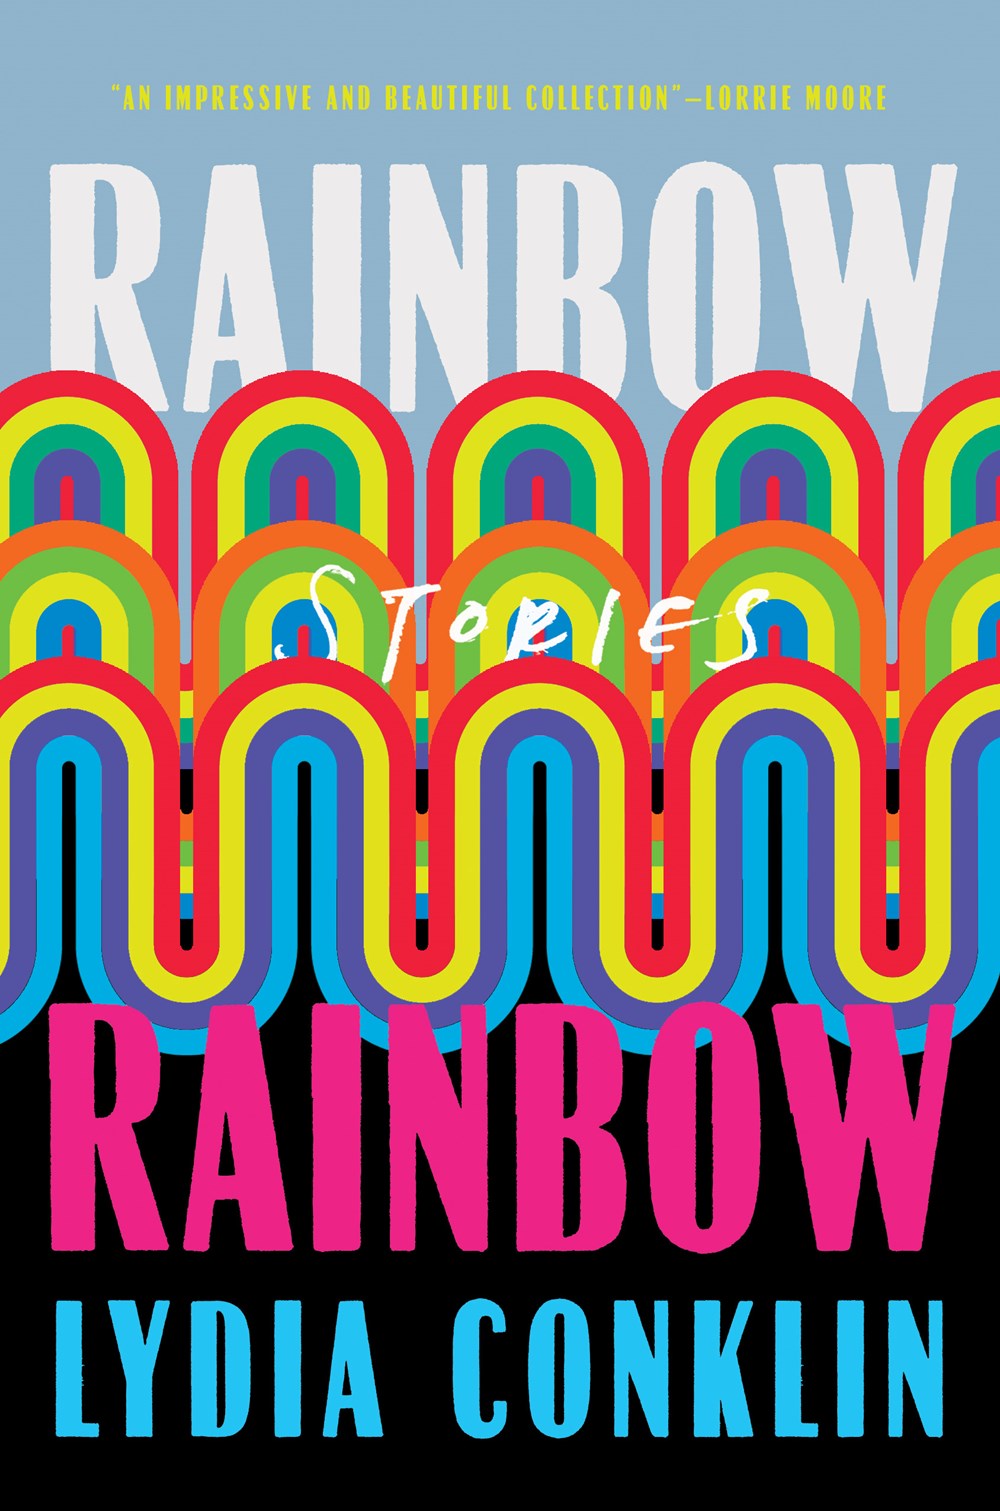 Image for "Rainbow Rainbow"